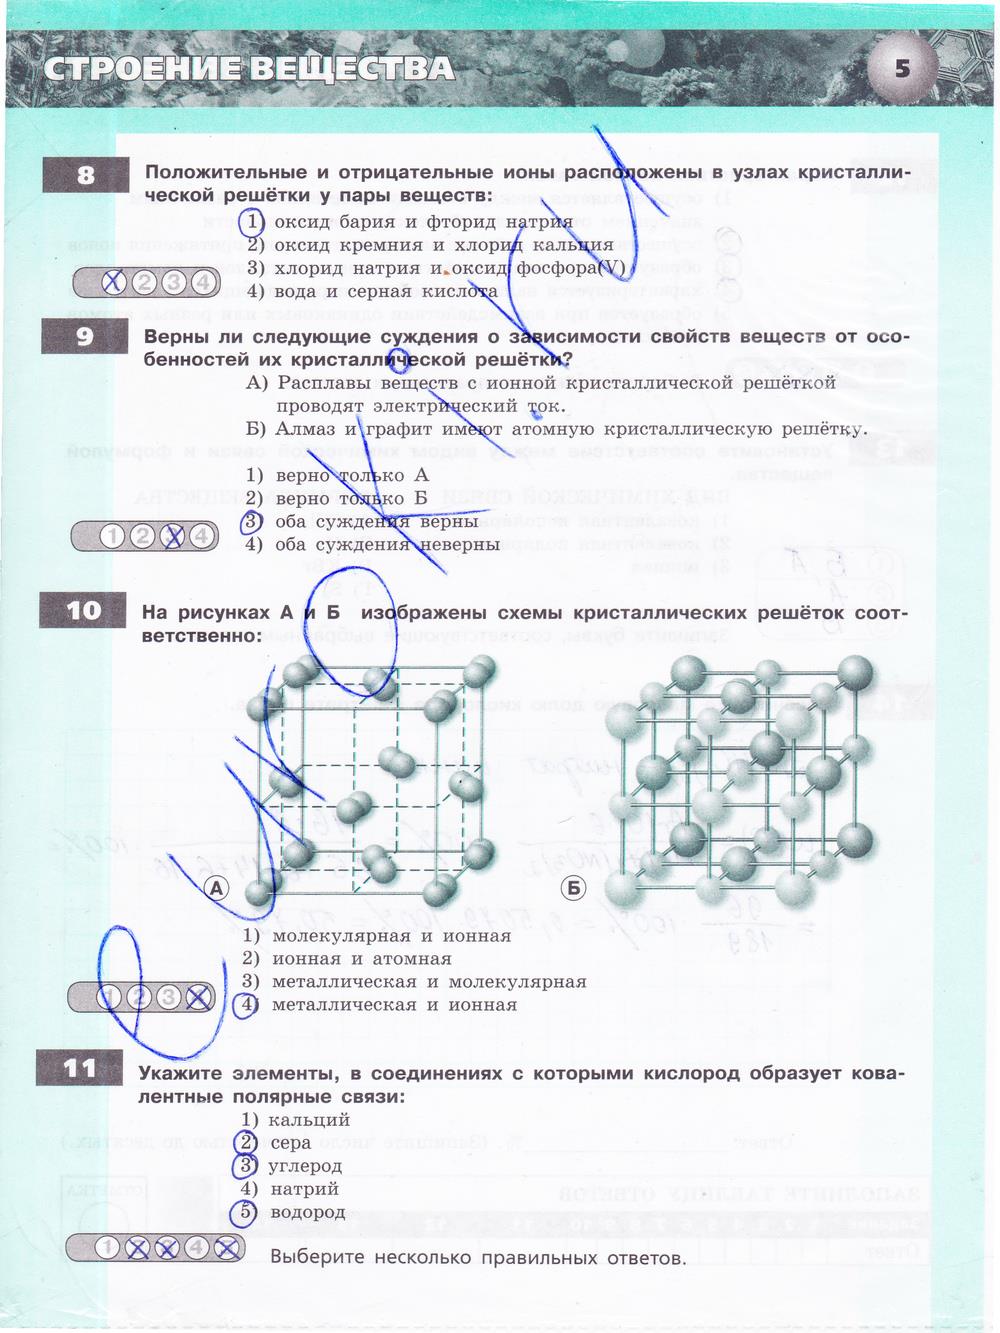 гдз 9 класс тетрадь-экзаменатор страница 5 химия Бобылева, Бирюлина